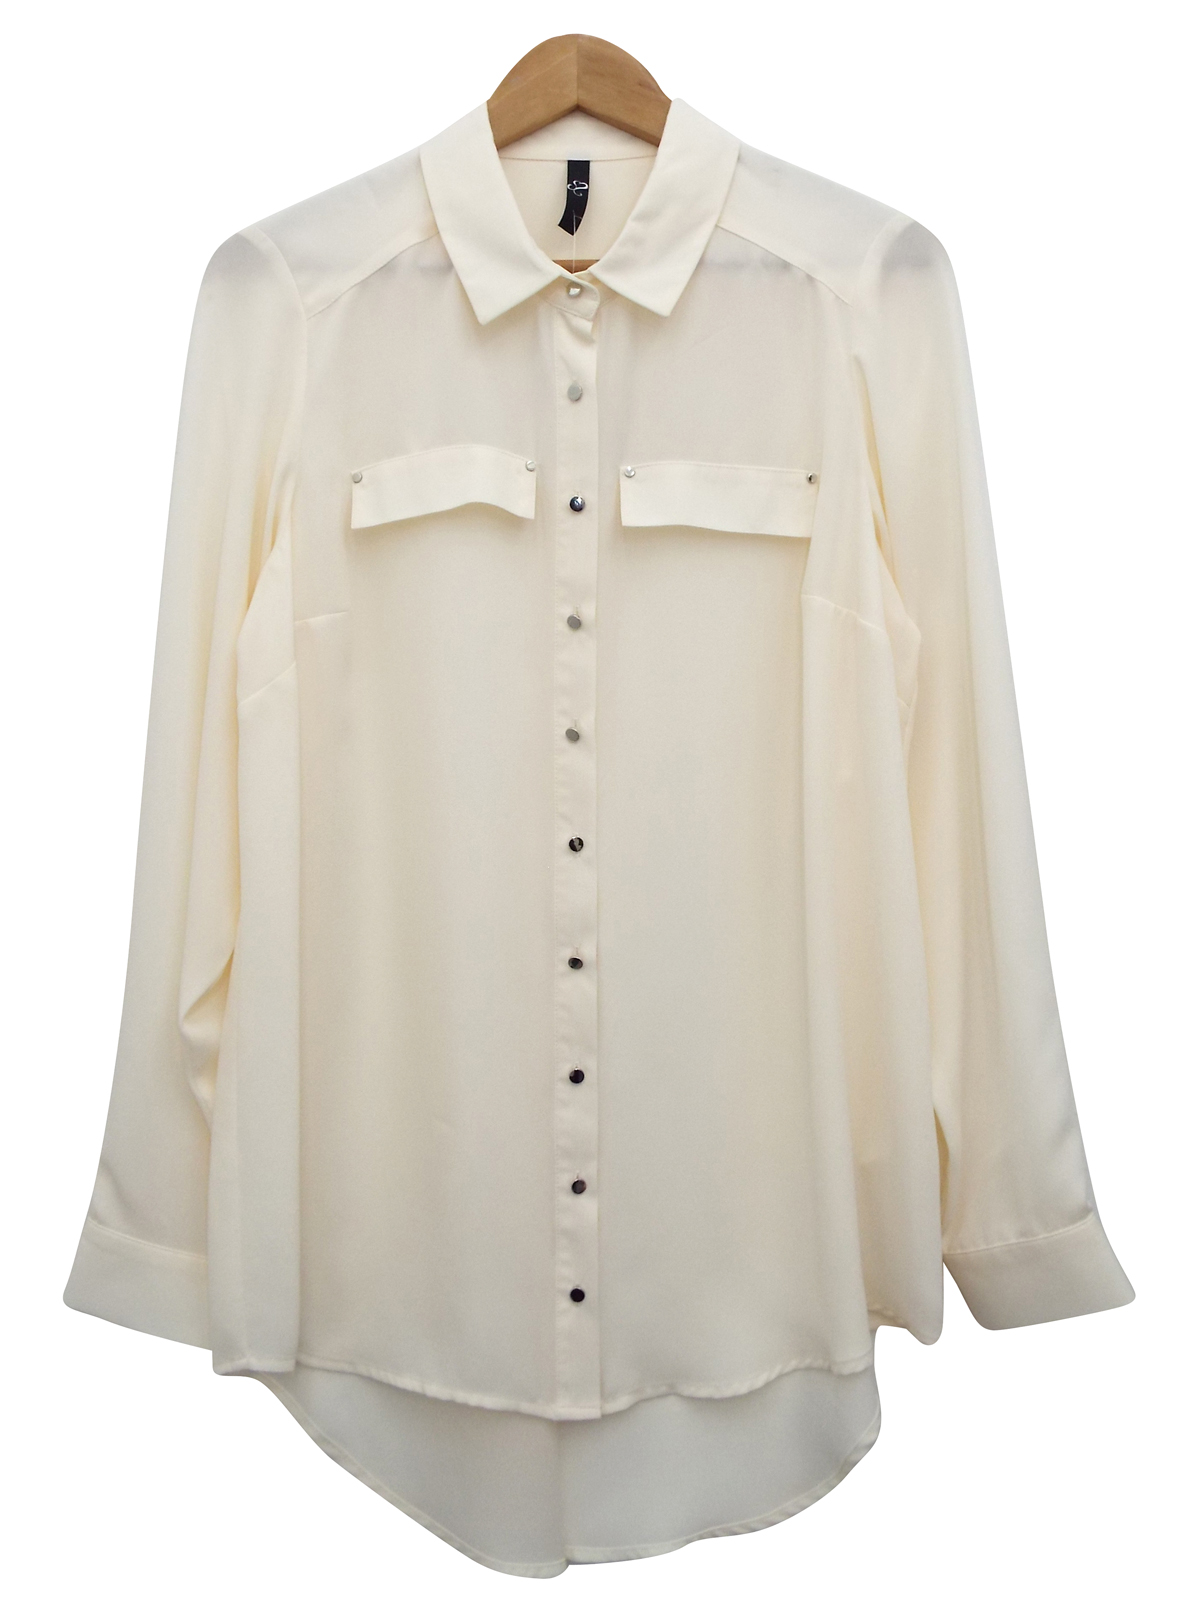 IVORY Long Sleeve Oblong Hem Shirt - Plus Size 14 to 30